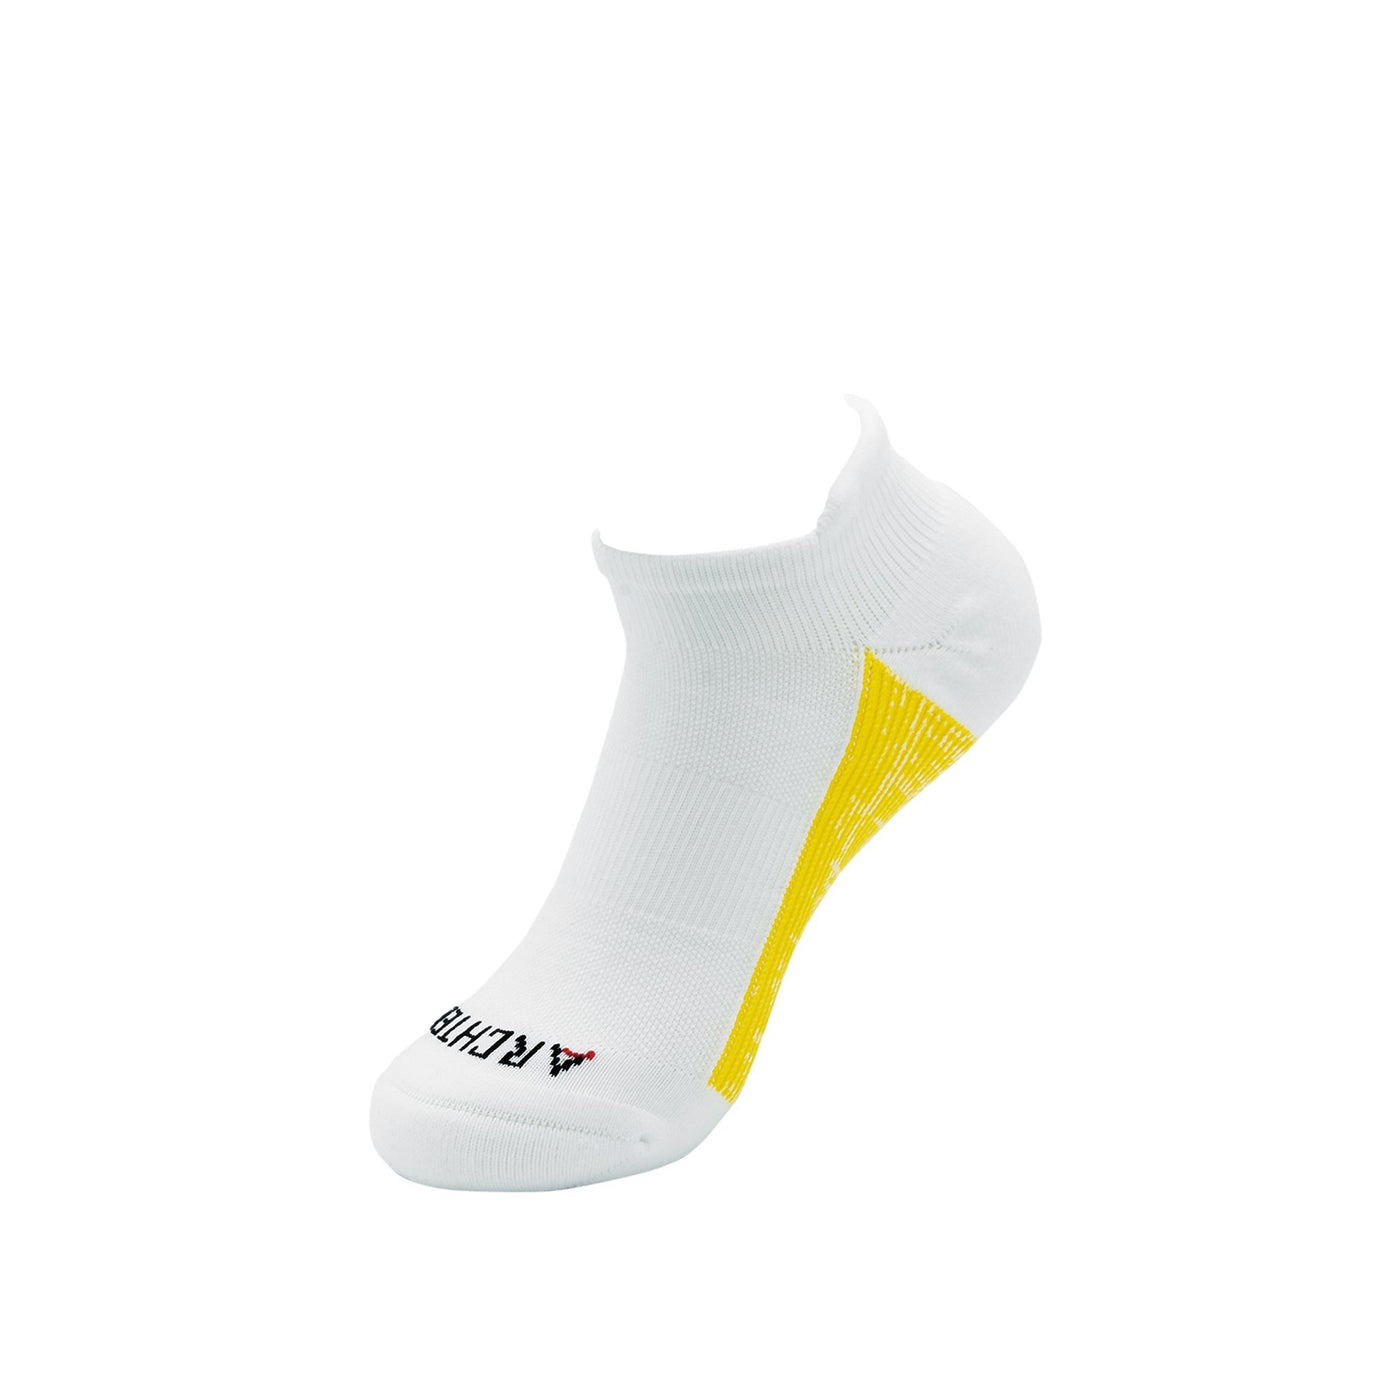 Athletic Ankle Sock 6-Pack in White athletic socks ArchTek